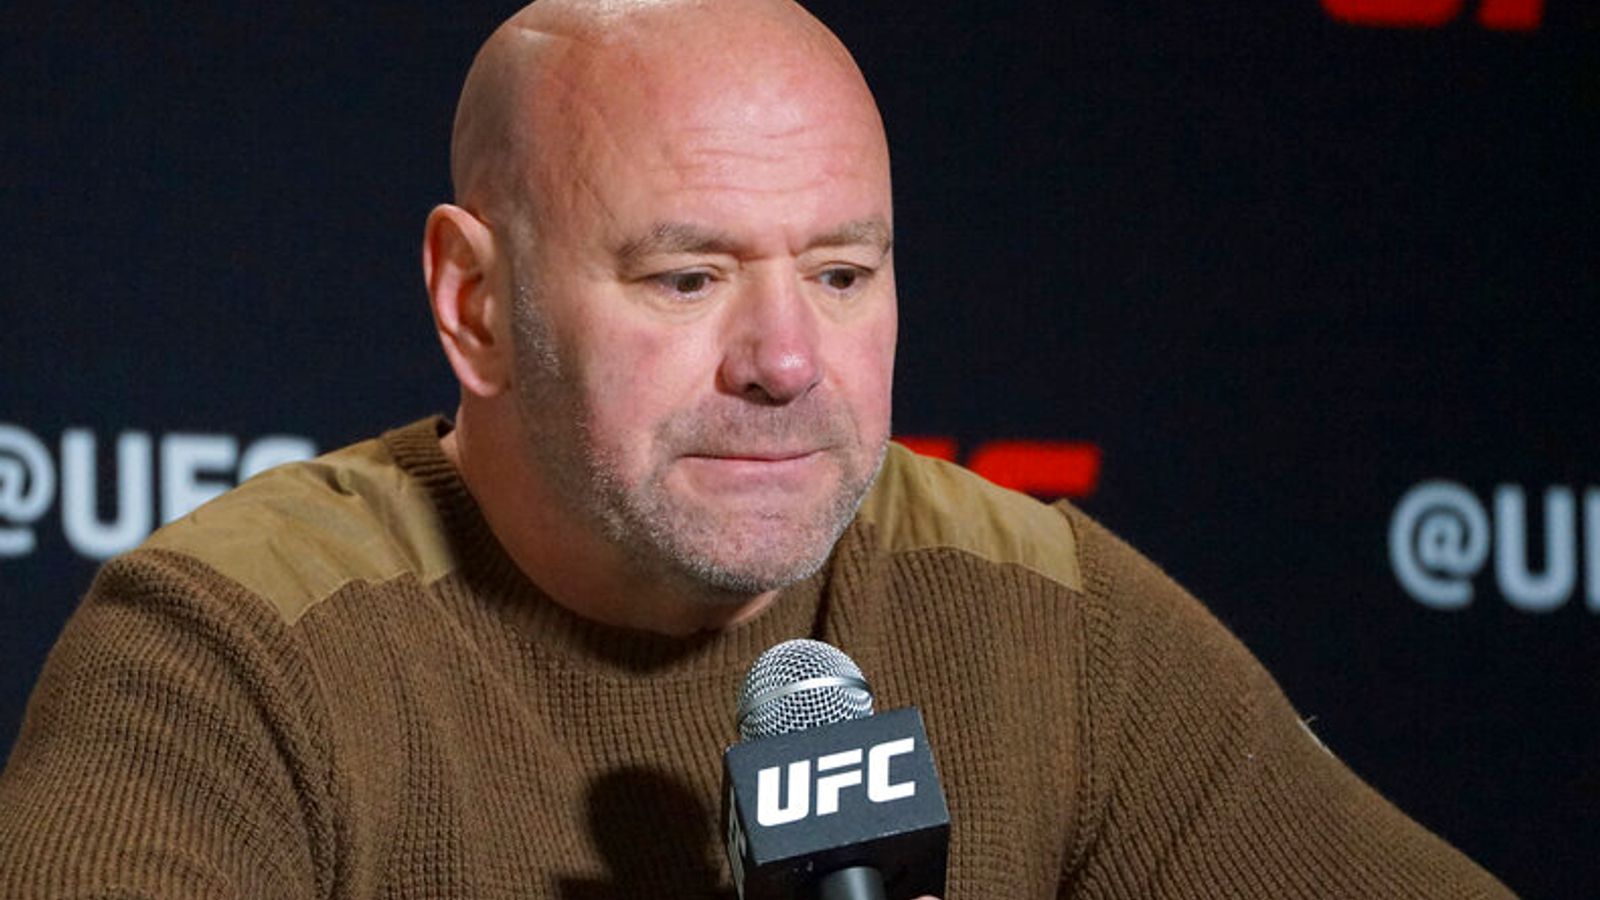 El presidente de UFC, Dana White, insinúa que no será castigado por abofetear a su esposa en la fiesta de fin de año en México |  Noticias del mundo